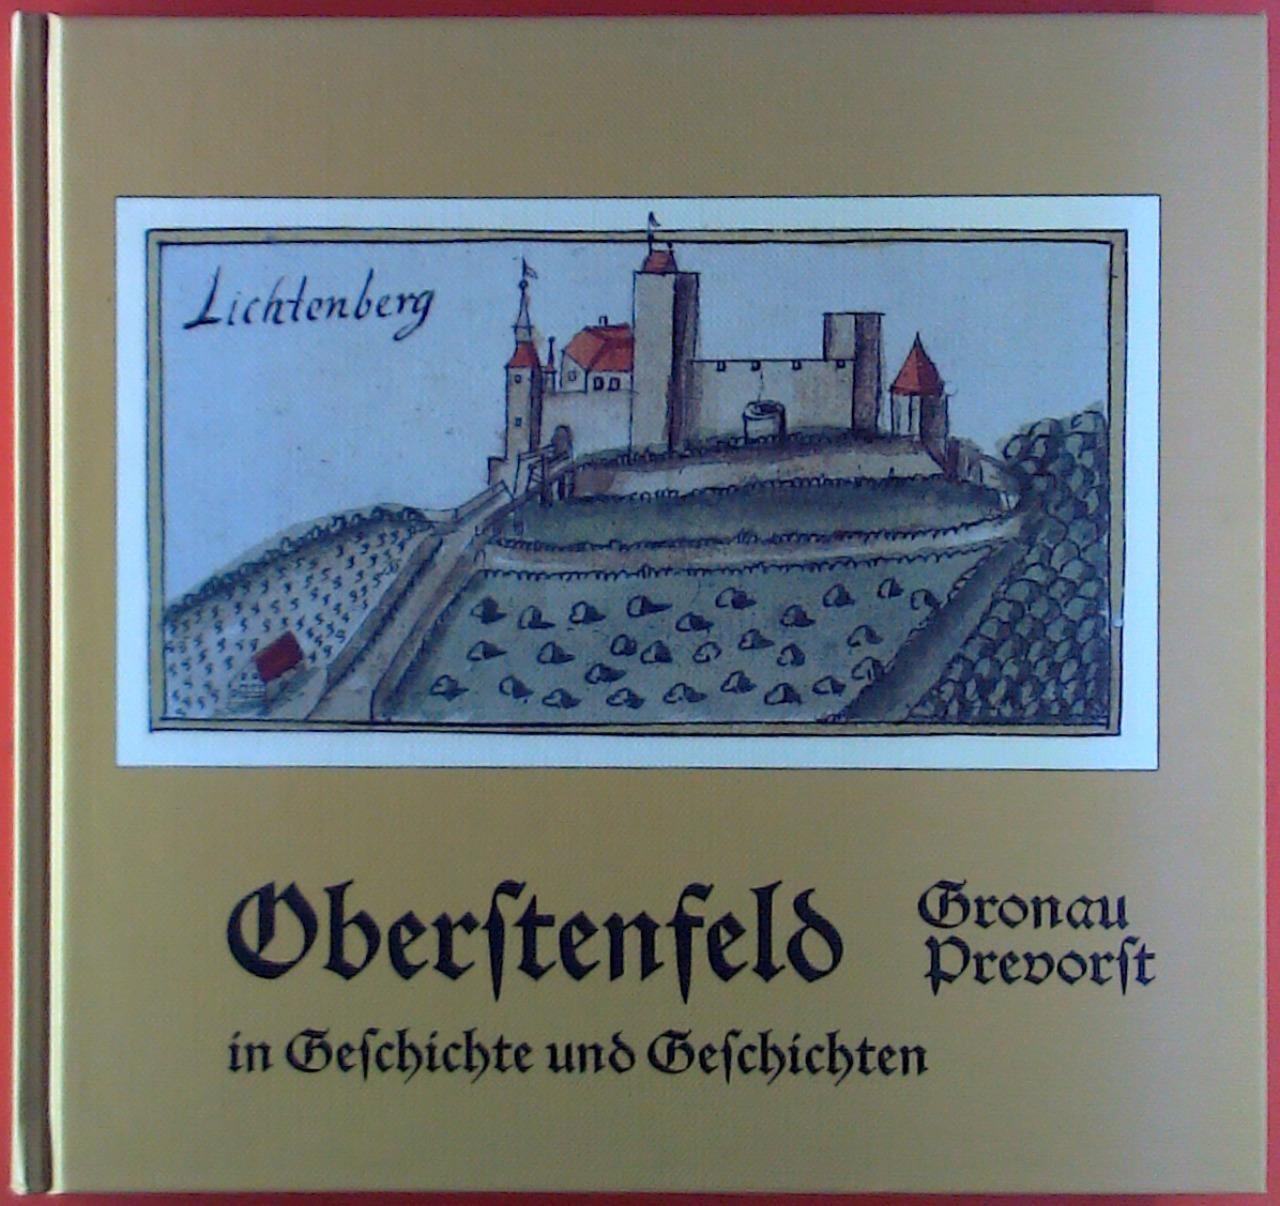 Oberstenfeld, Gronau, Prevorst in Geschichte und Geschichten